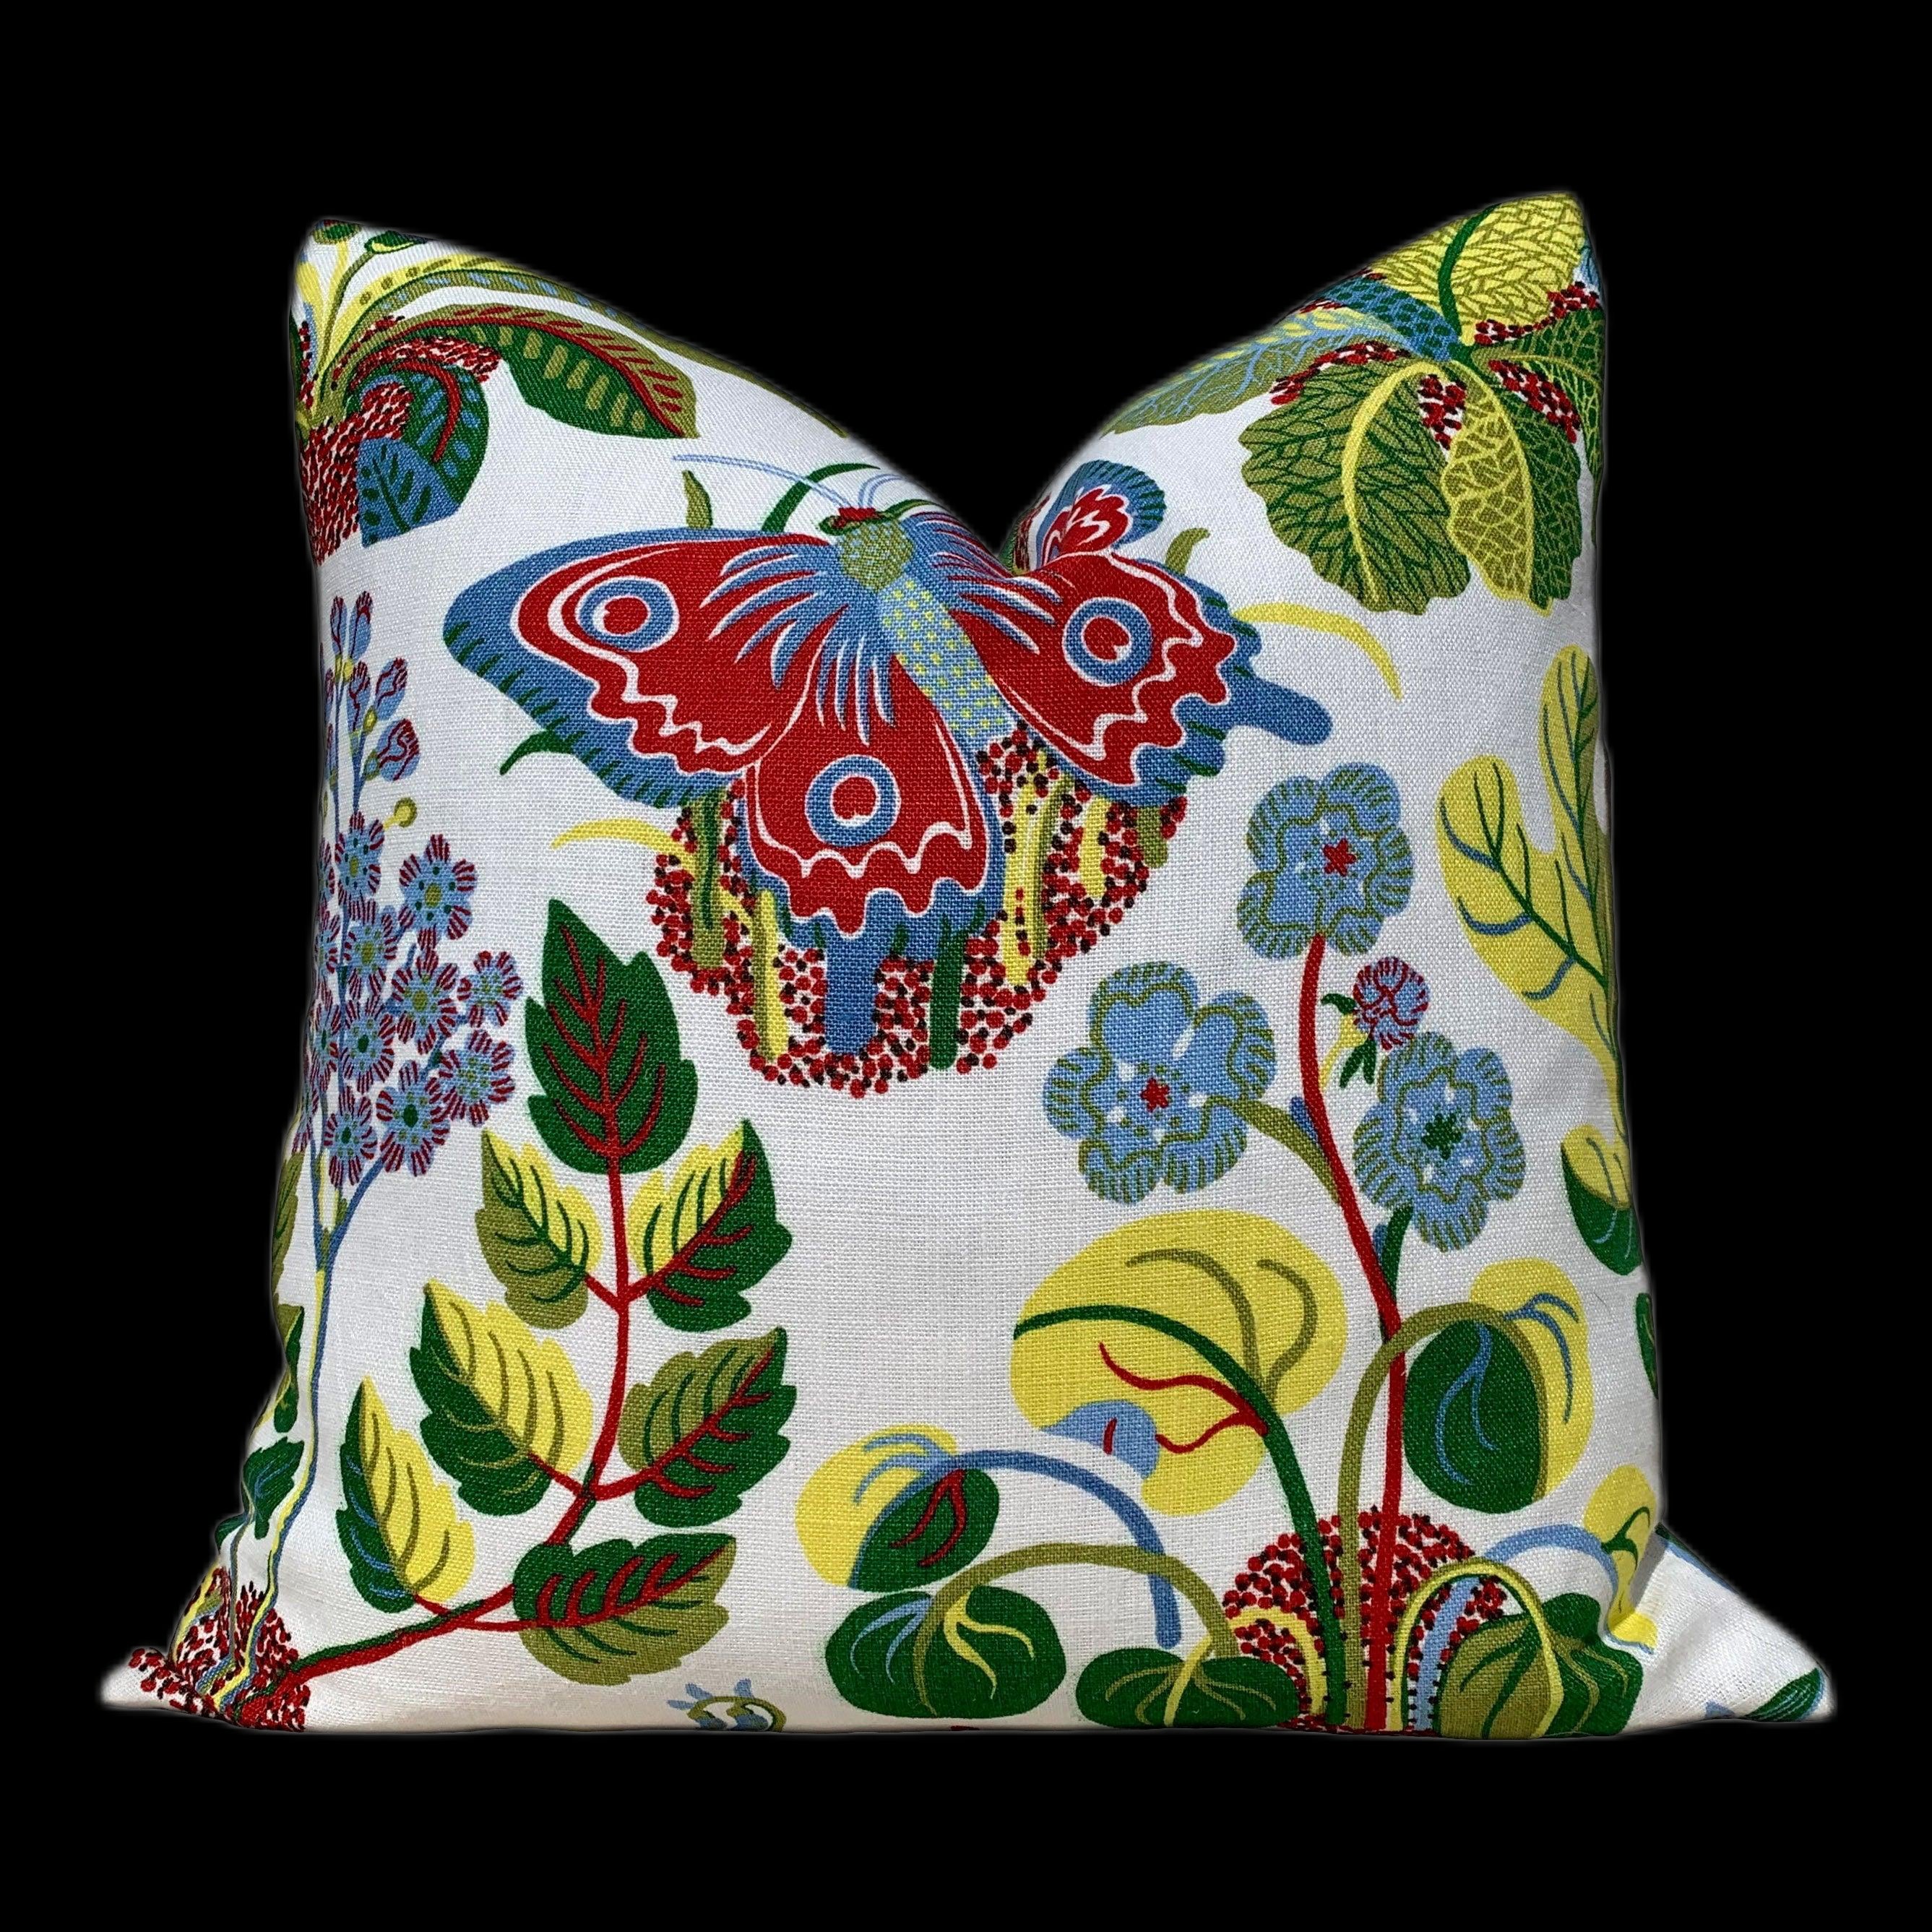 Linen Exotic Butterfly Pillow Green, Red, Yellow, Blue. Multicolor LInen Pillow, Floral Green Pillow, Euro Sham Pillow Cover, Long Lumbar